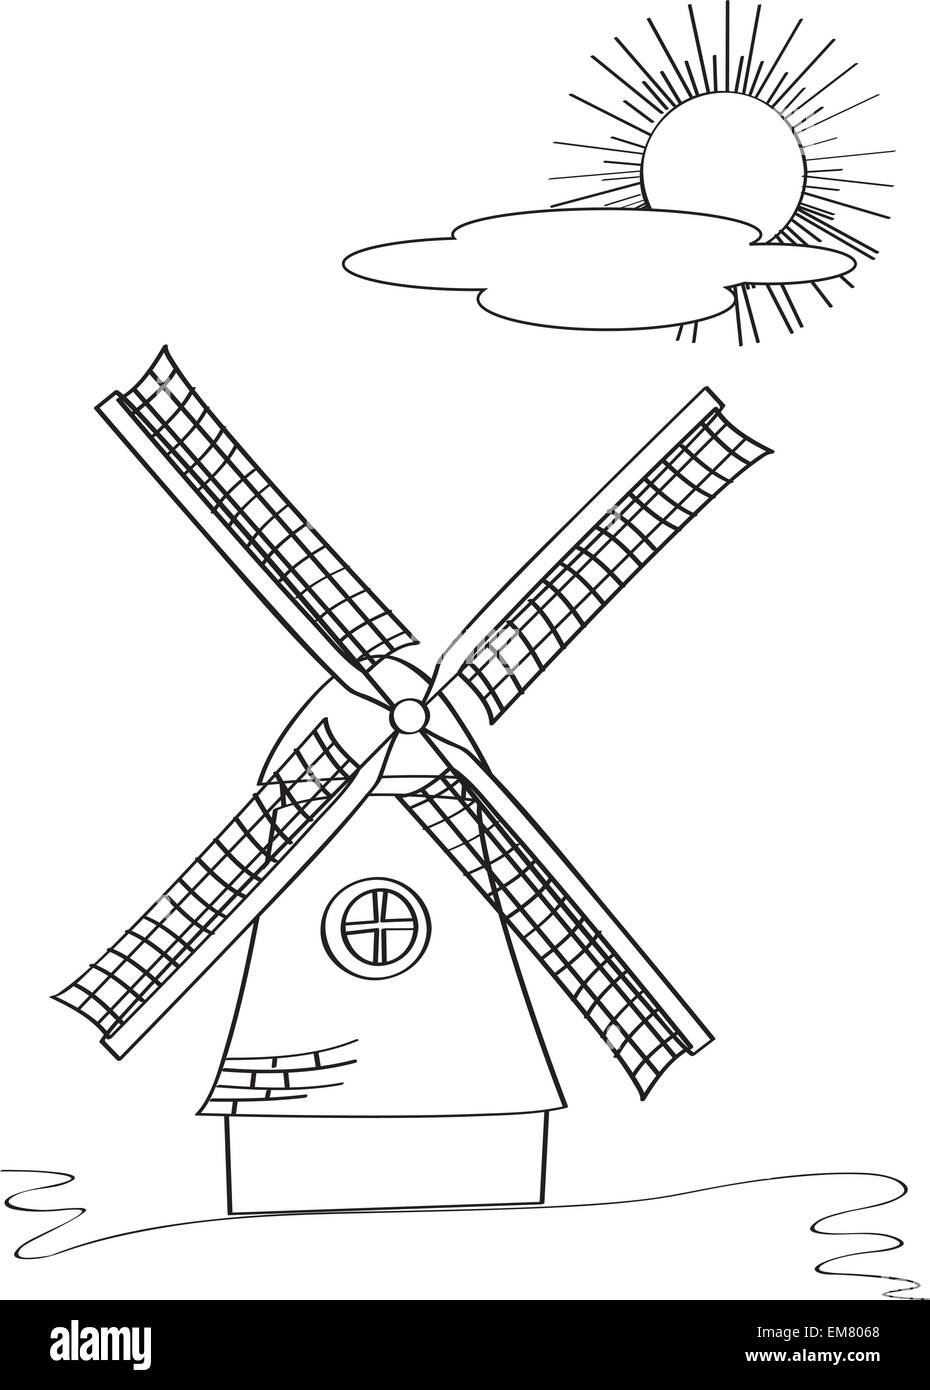 Croquis de moulin à vent Illustration de Vecteur